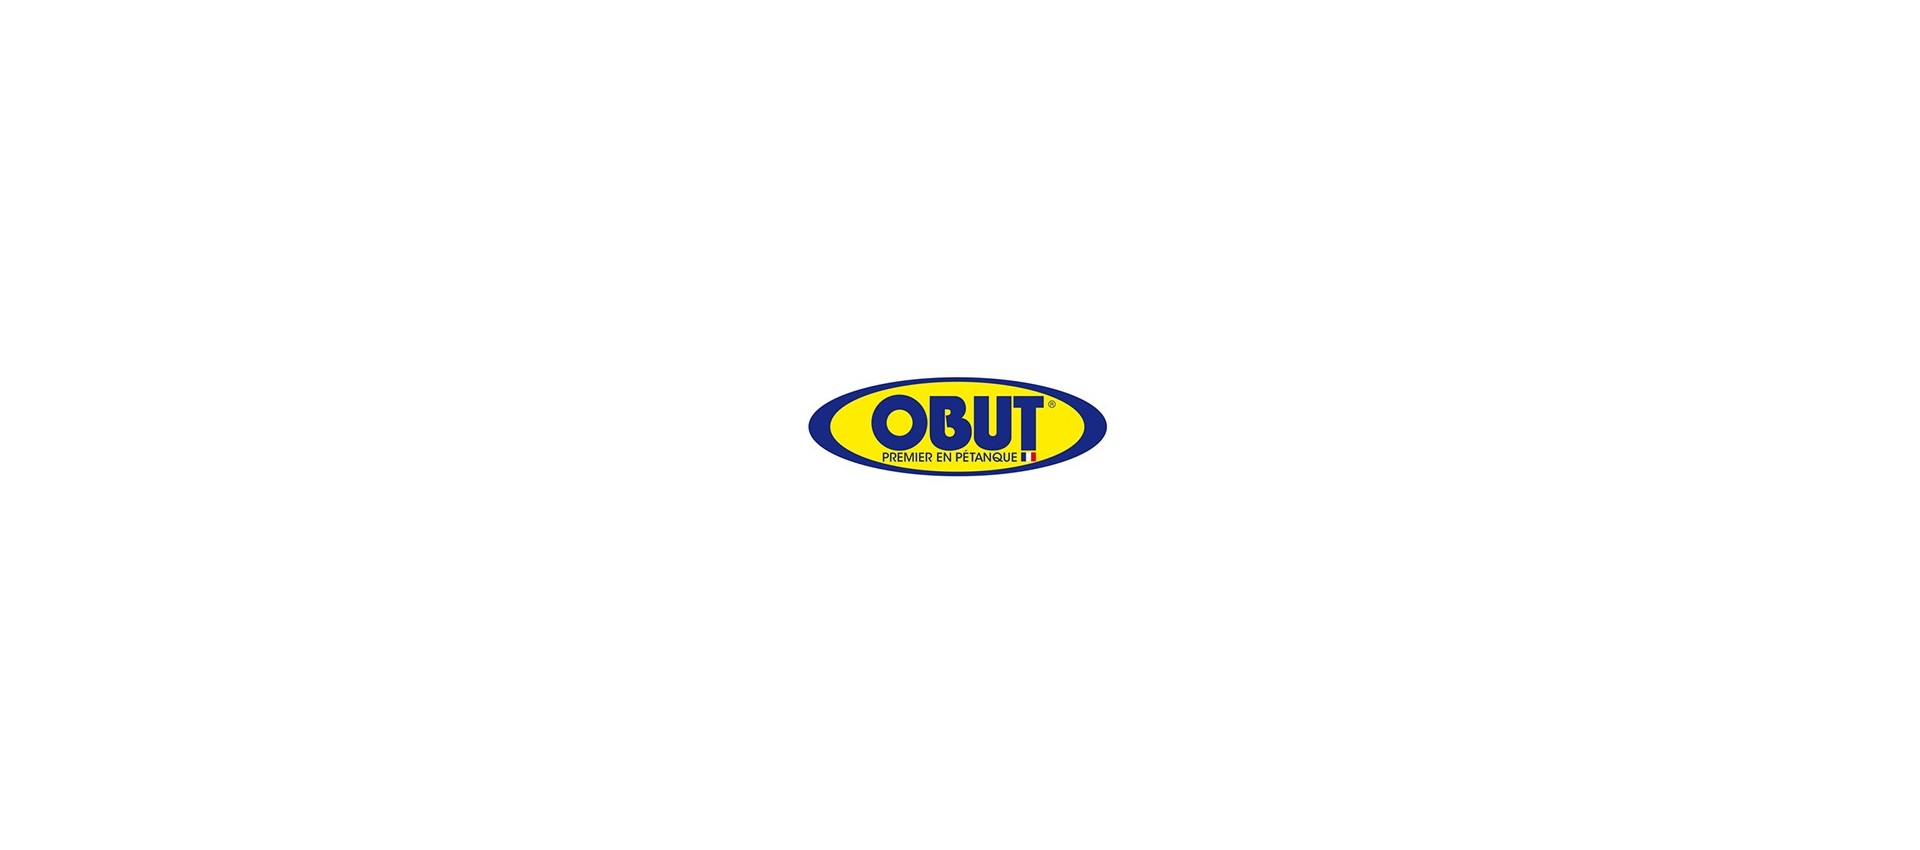 Venda de Boules Obut on-line a preços imbatíveis, entrega rápida